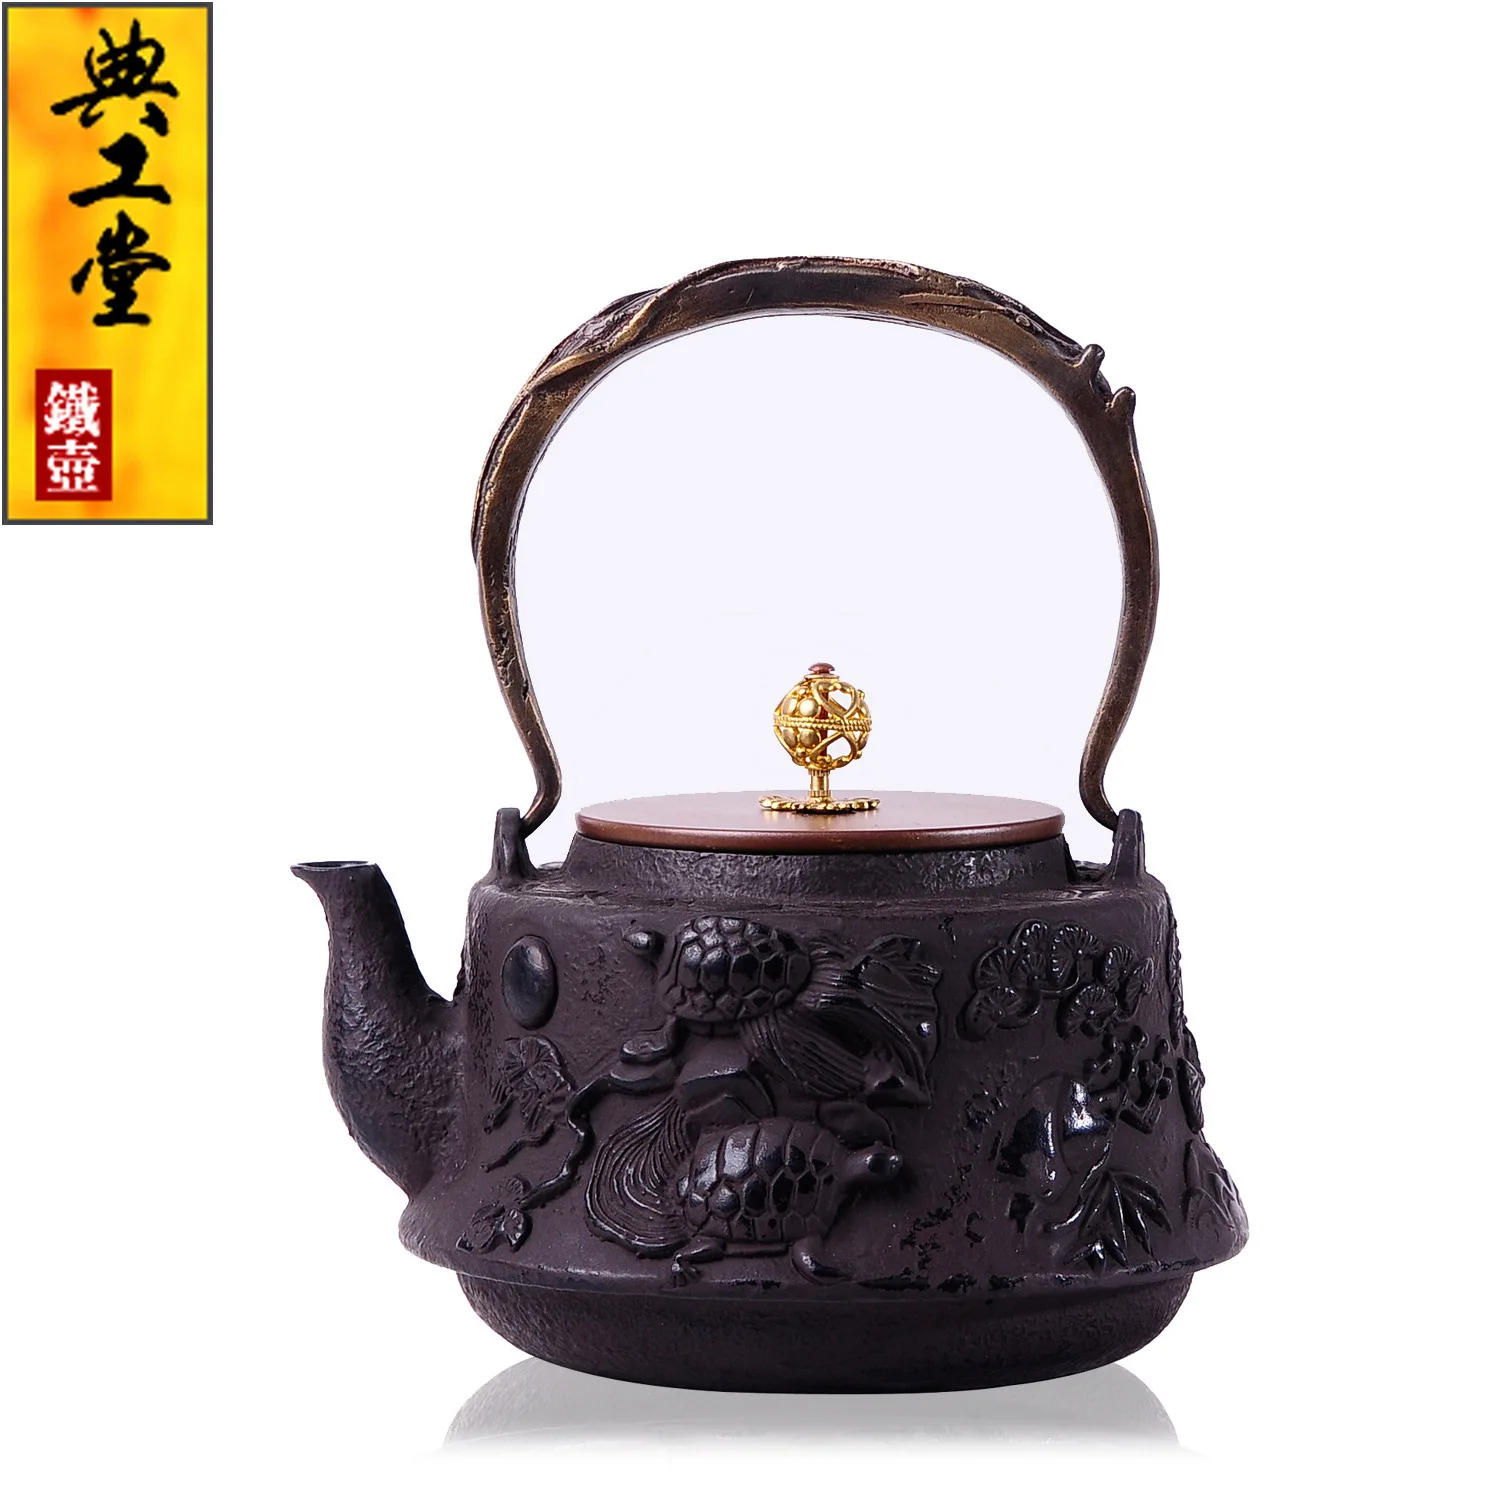 Литой железный чайник без покрытия японский чайный набор кунг-фу ручной работы японский чайник в виде черепахи с фильтром 1200CC Горячая